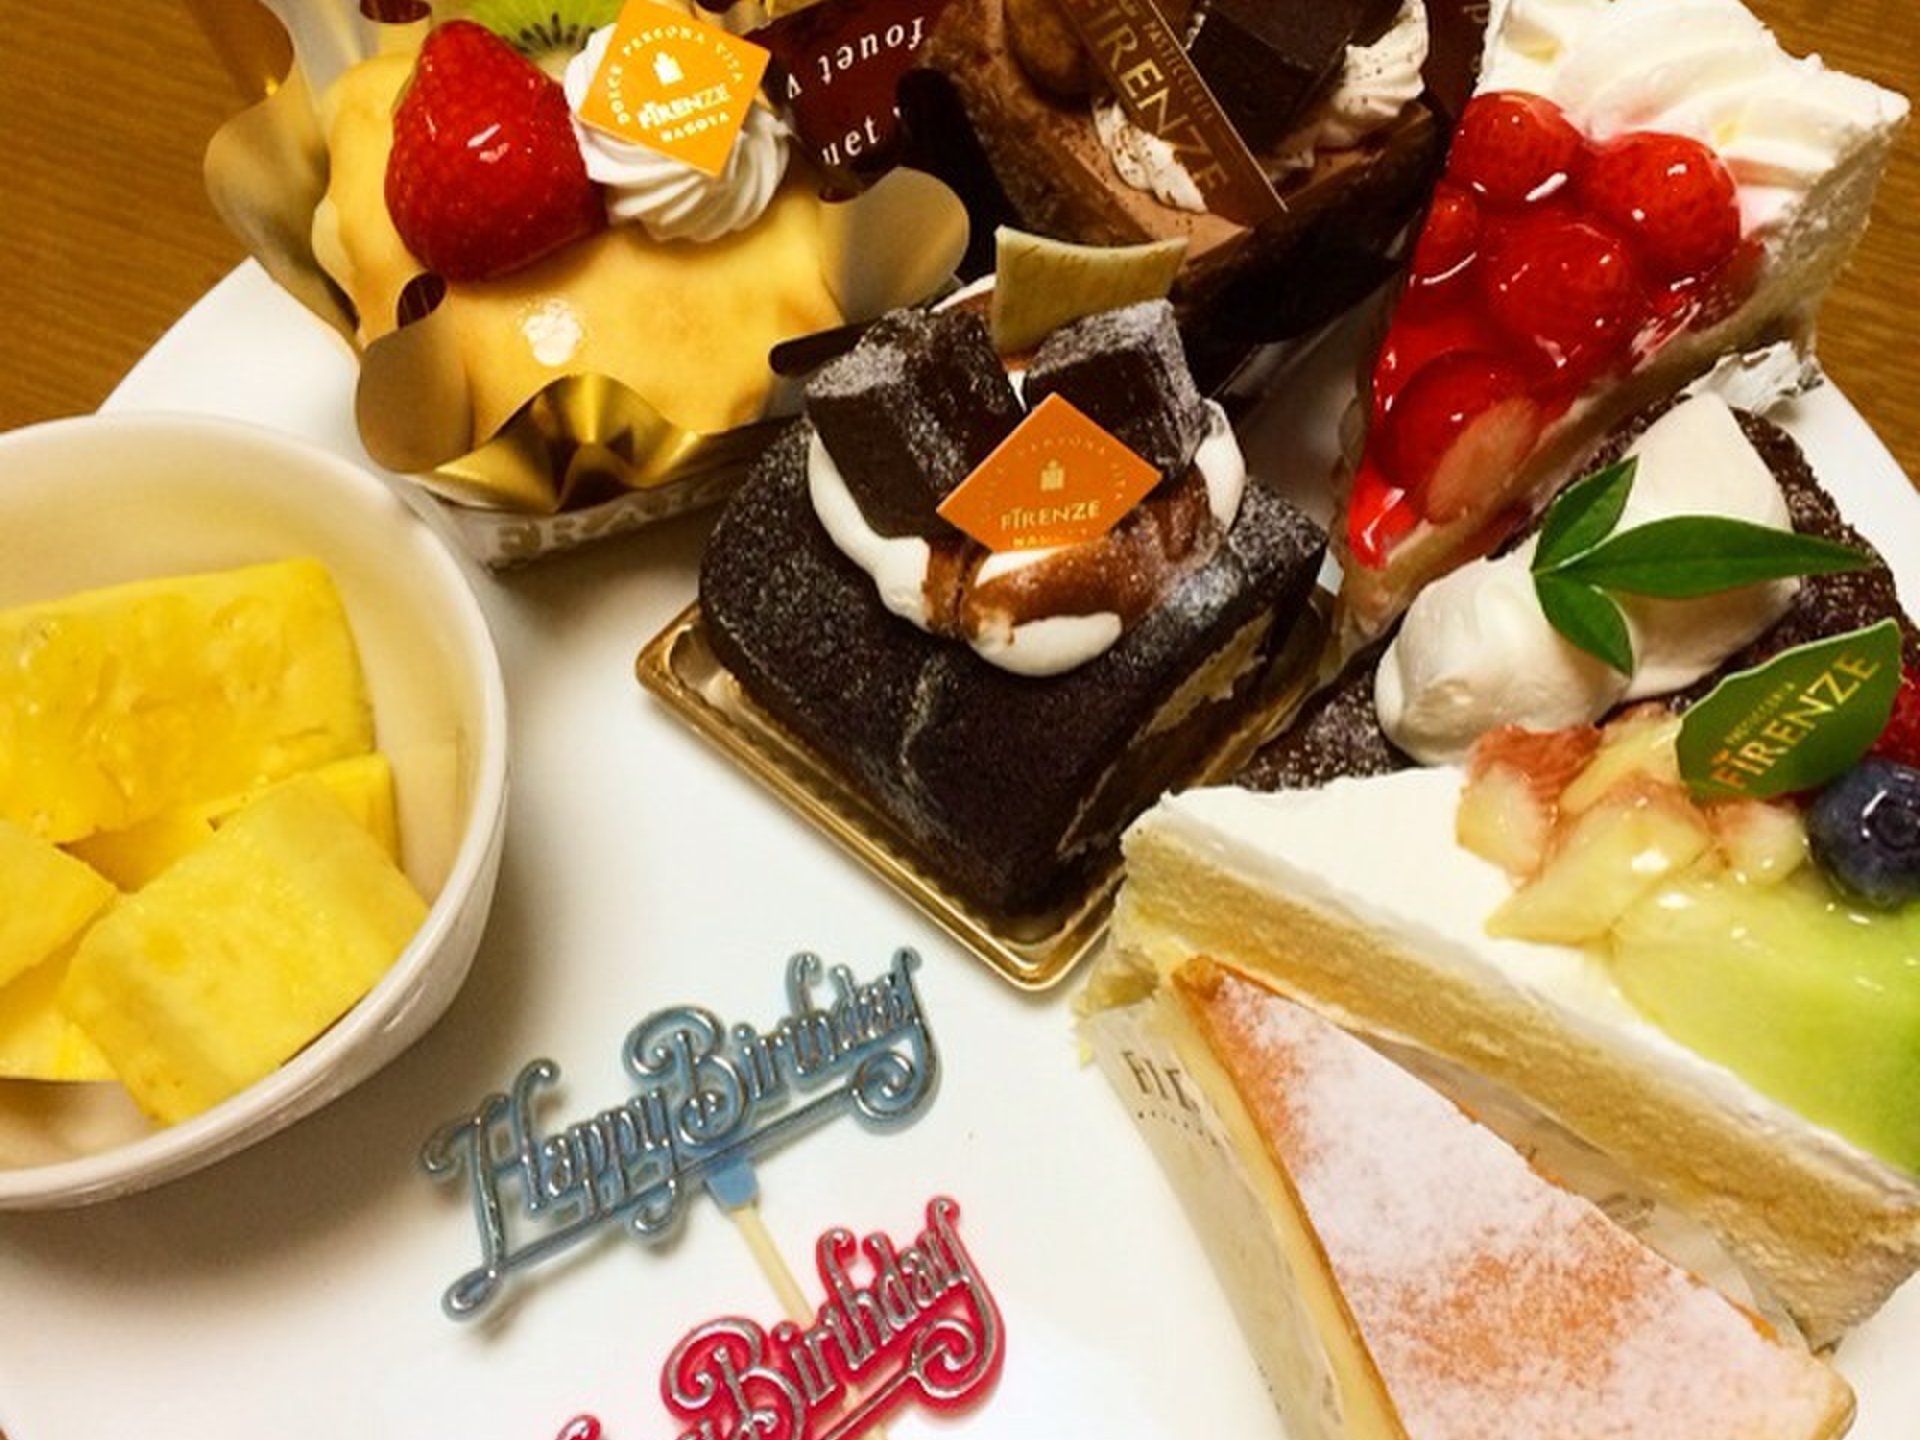 名古屋にある絶品ケーキ屋さん【フィレンツェのケーキをオシャレに盛り付け】妹の誕生日会